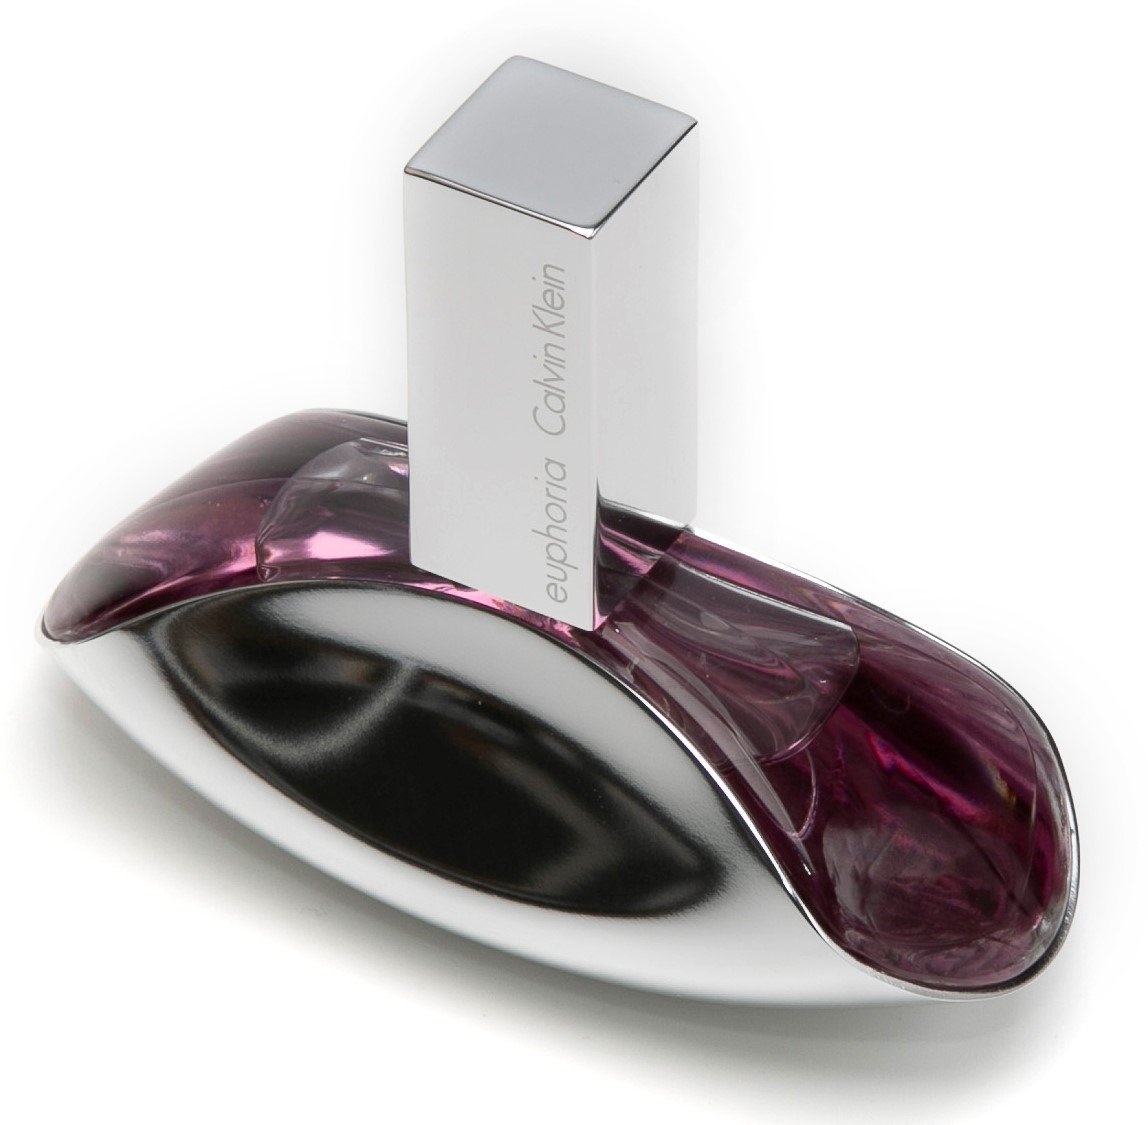 Humaan uitvinding vaak Calvin Klein Euphoria Eau de Parfum ab 21,99 € | billiger.de